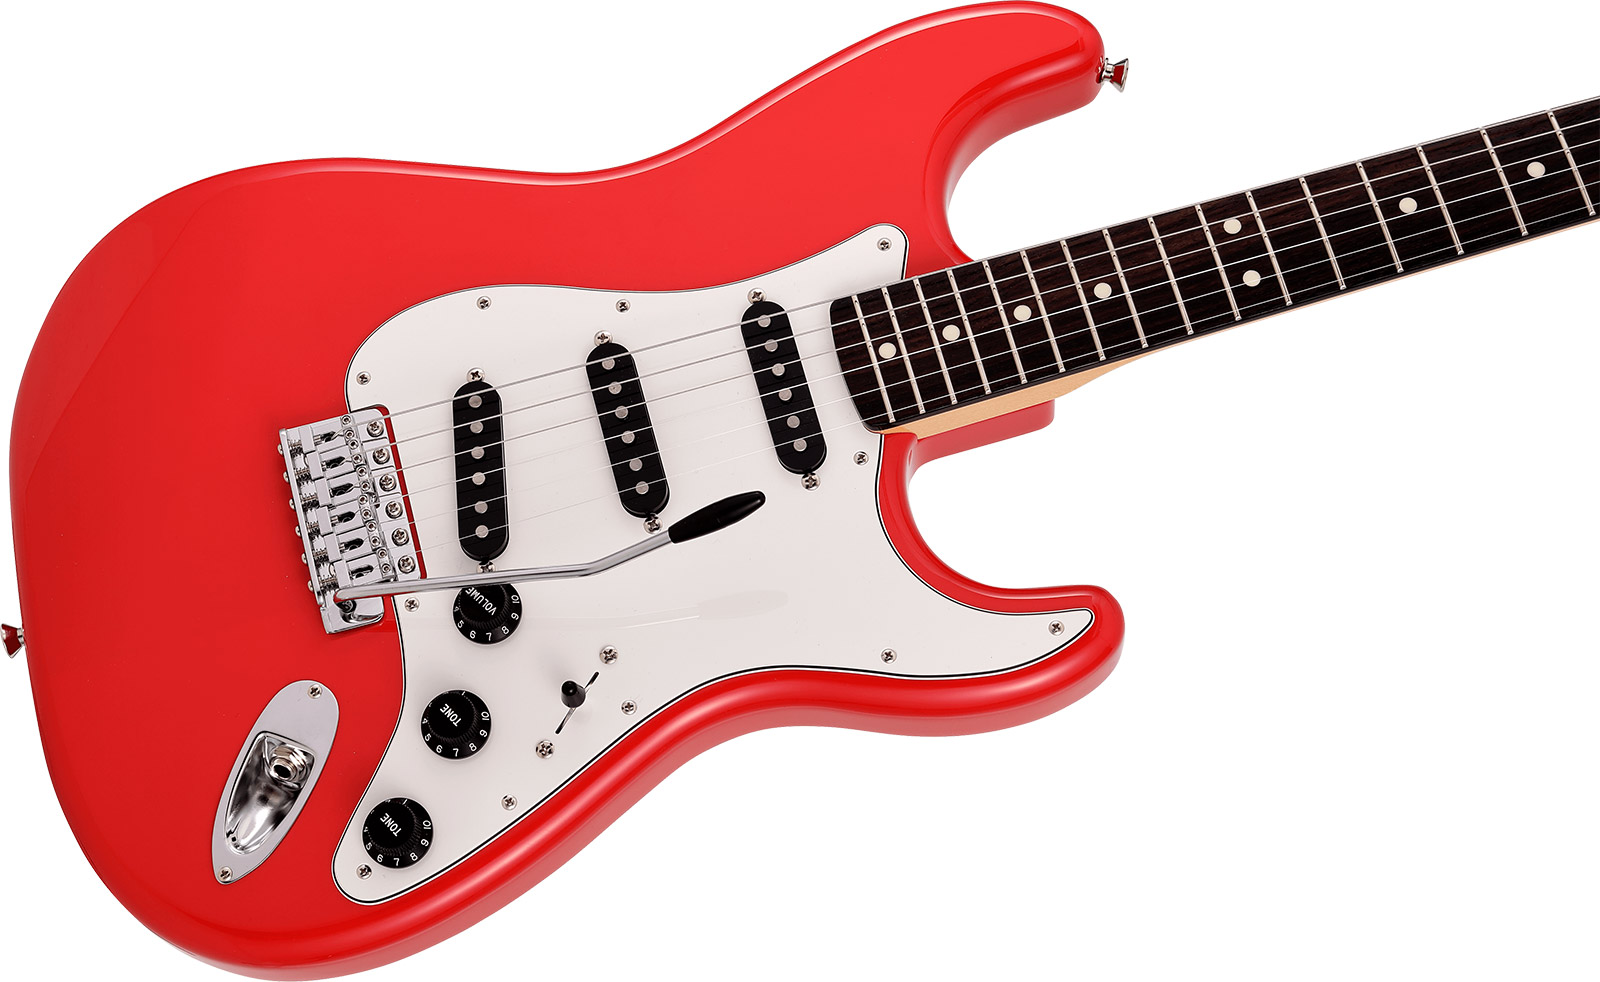 Fender Strat International Color Ltd Jap 3s Trem Rw - Morocco Red - Elektrische gitaar in Str-vorm - Variation 2